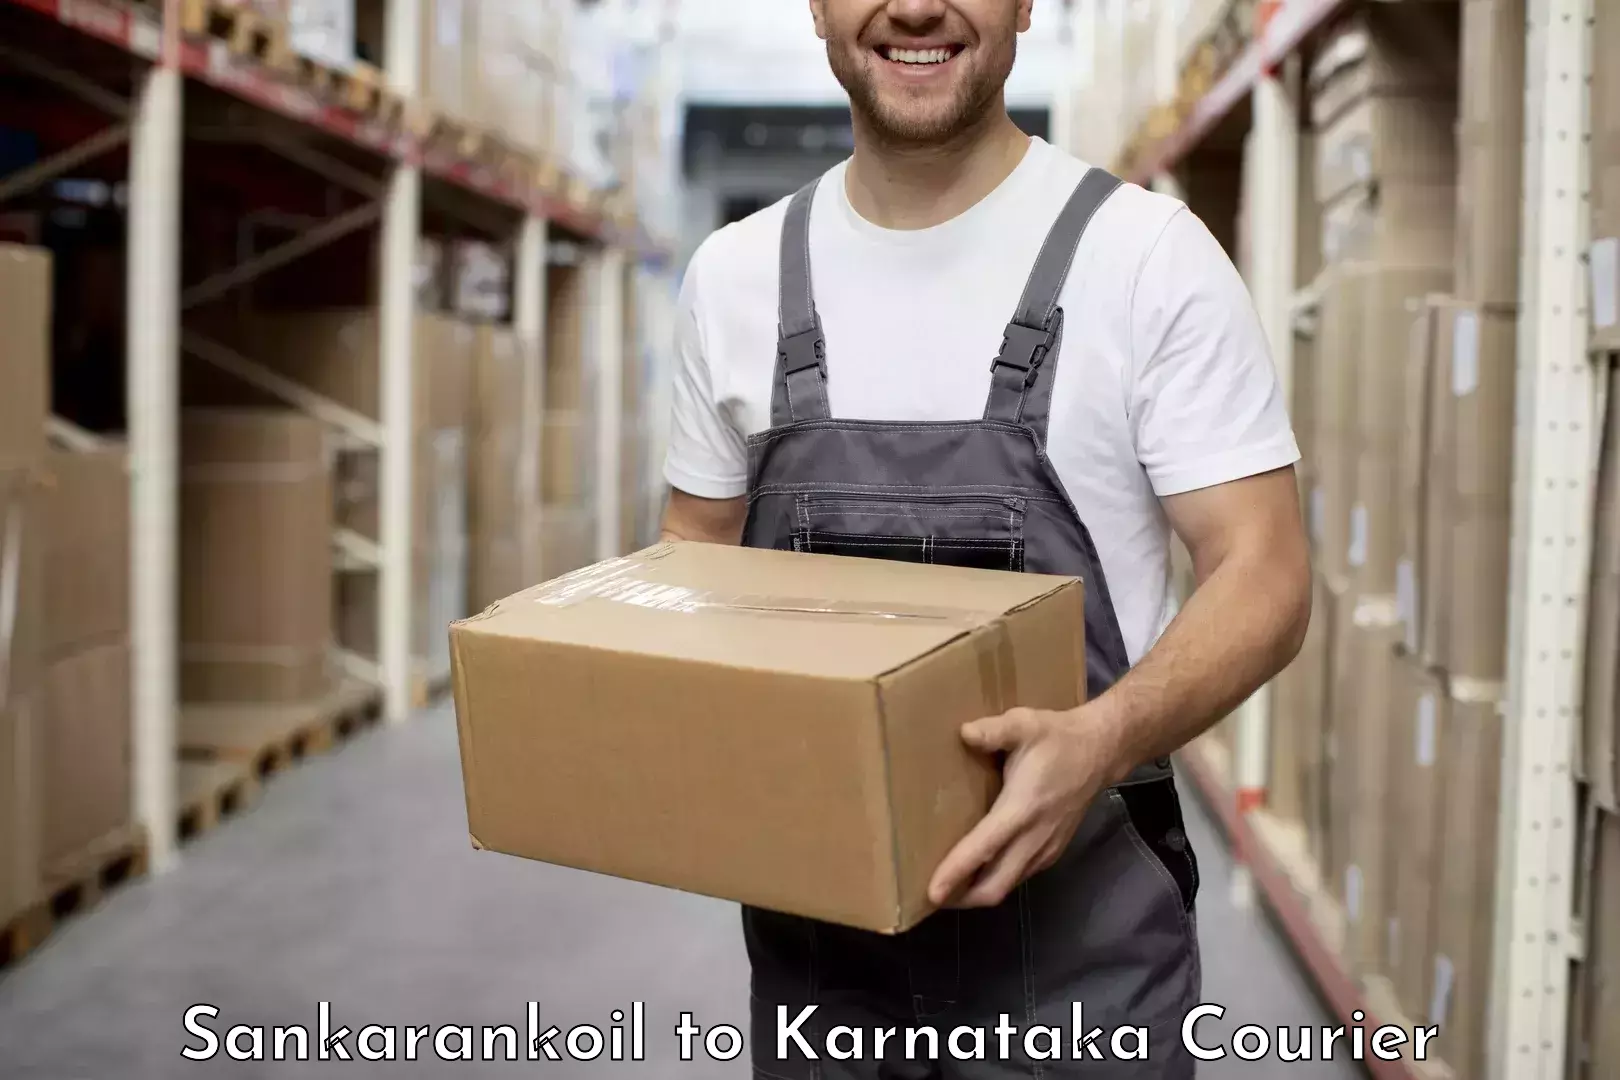 Express delivery network Sankarankoil to Aland Kalaburagi